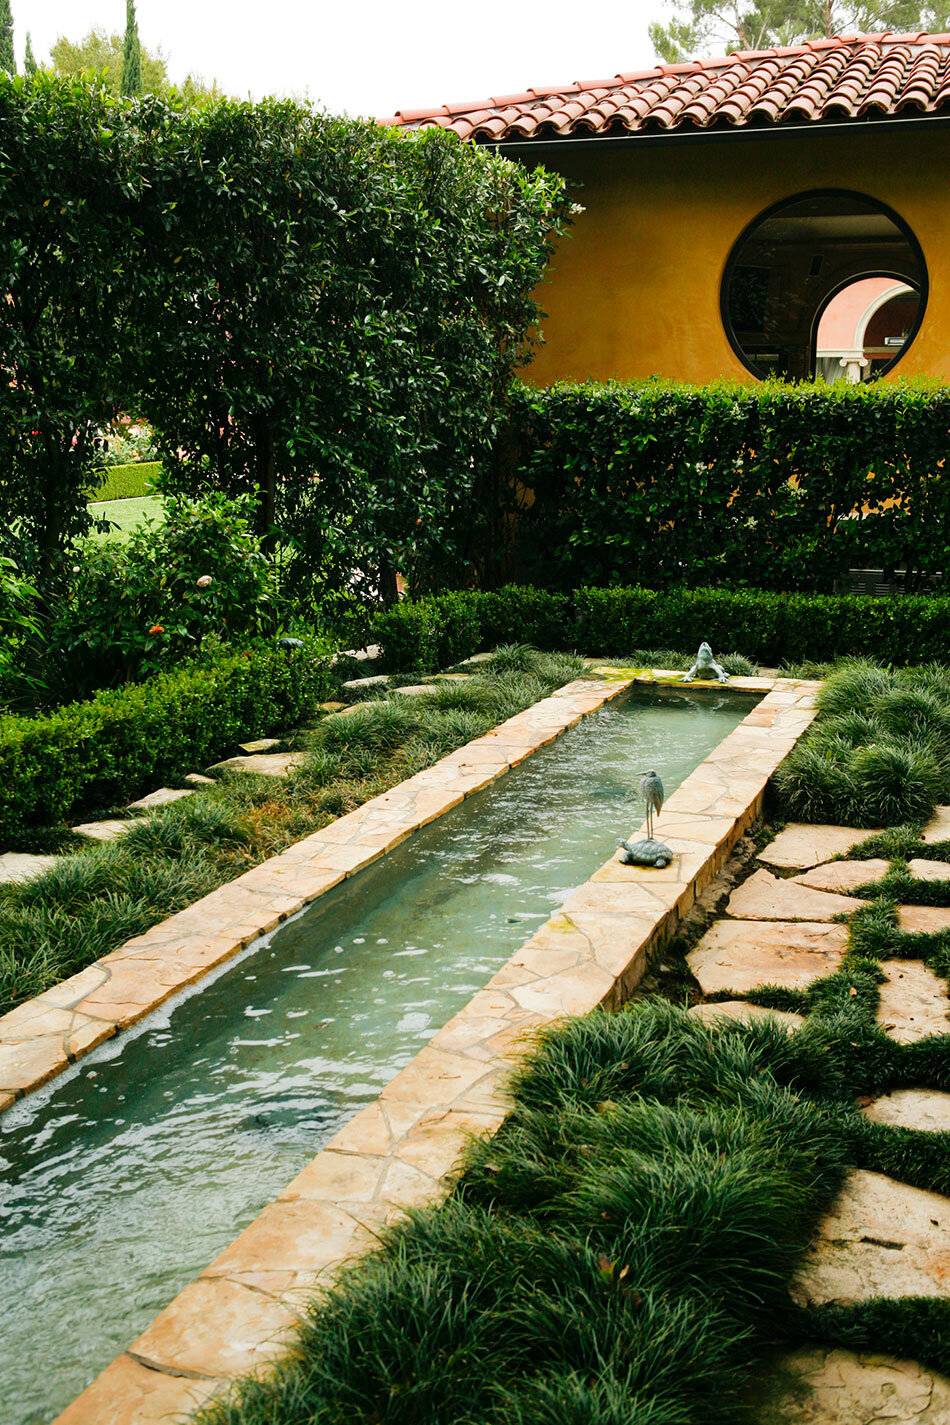 Fascinating Exquisite Italian Garden Design